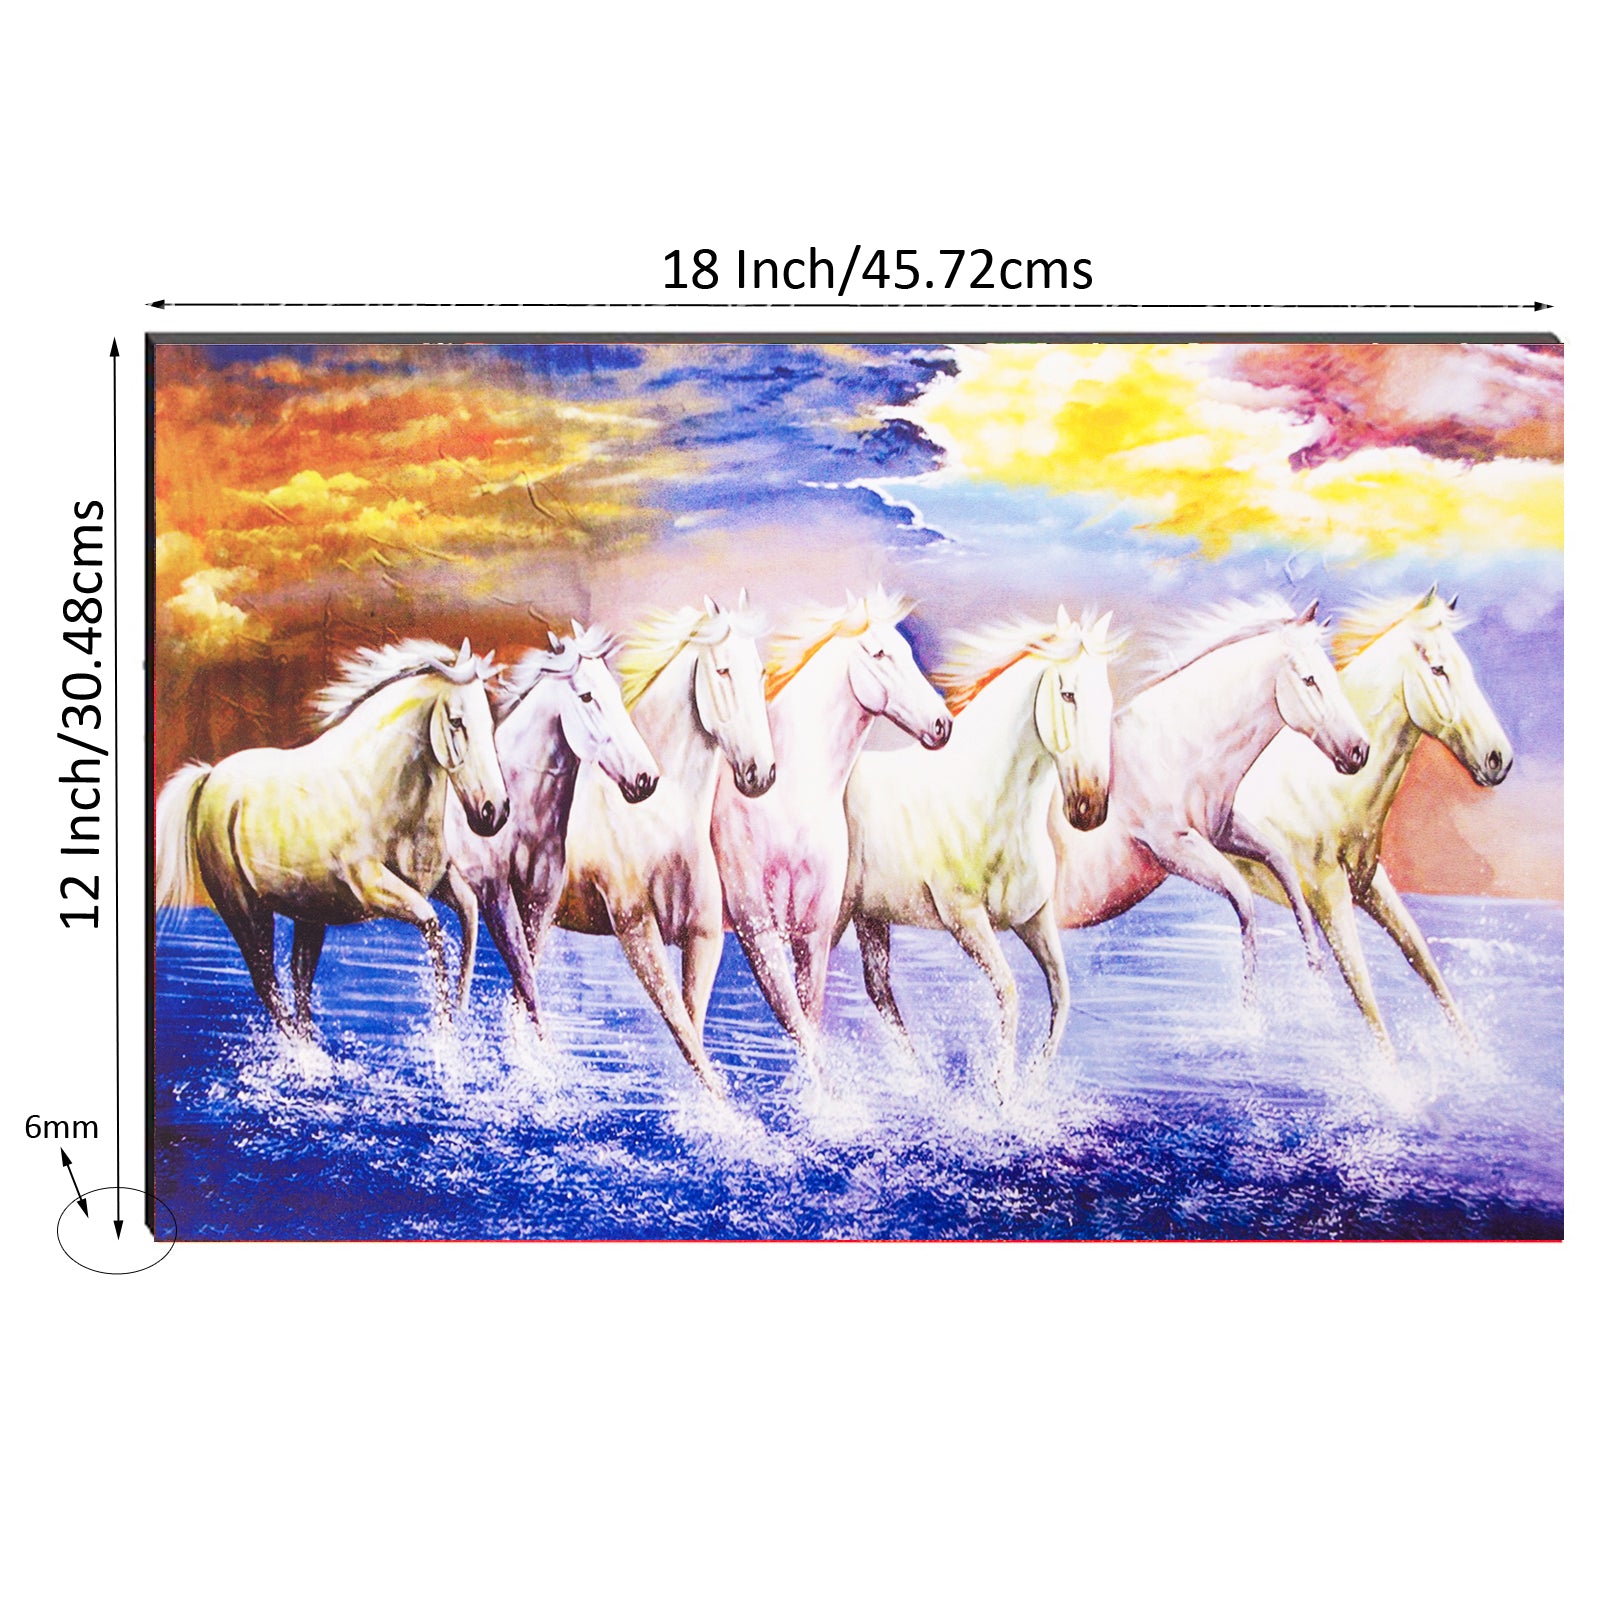 6MM MDF Lucky 7 Running Horses Satin Matt Texture UV Art Painting 2